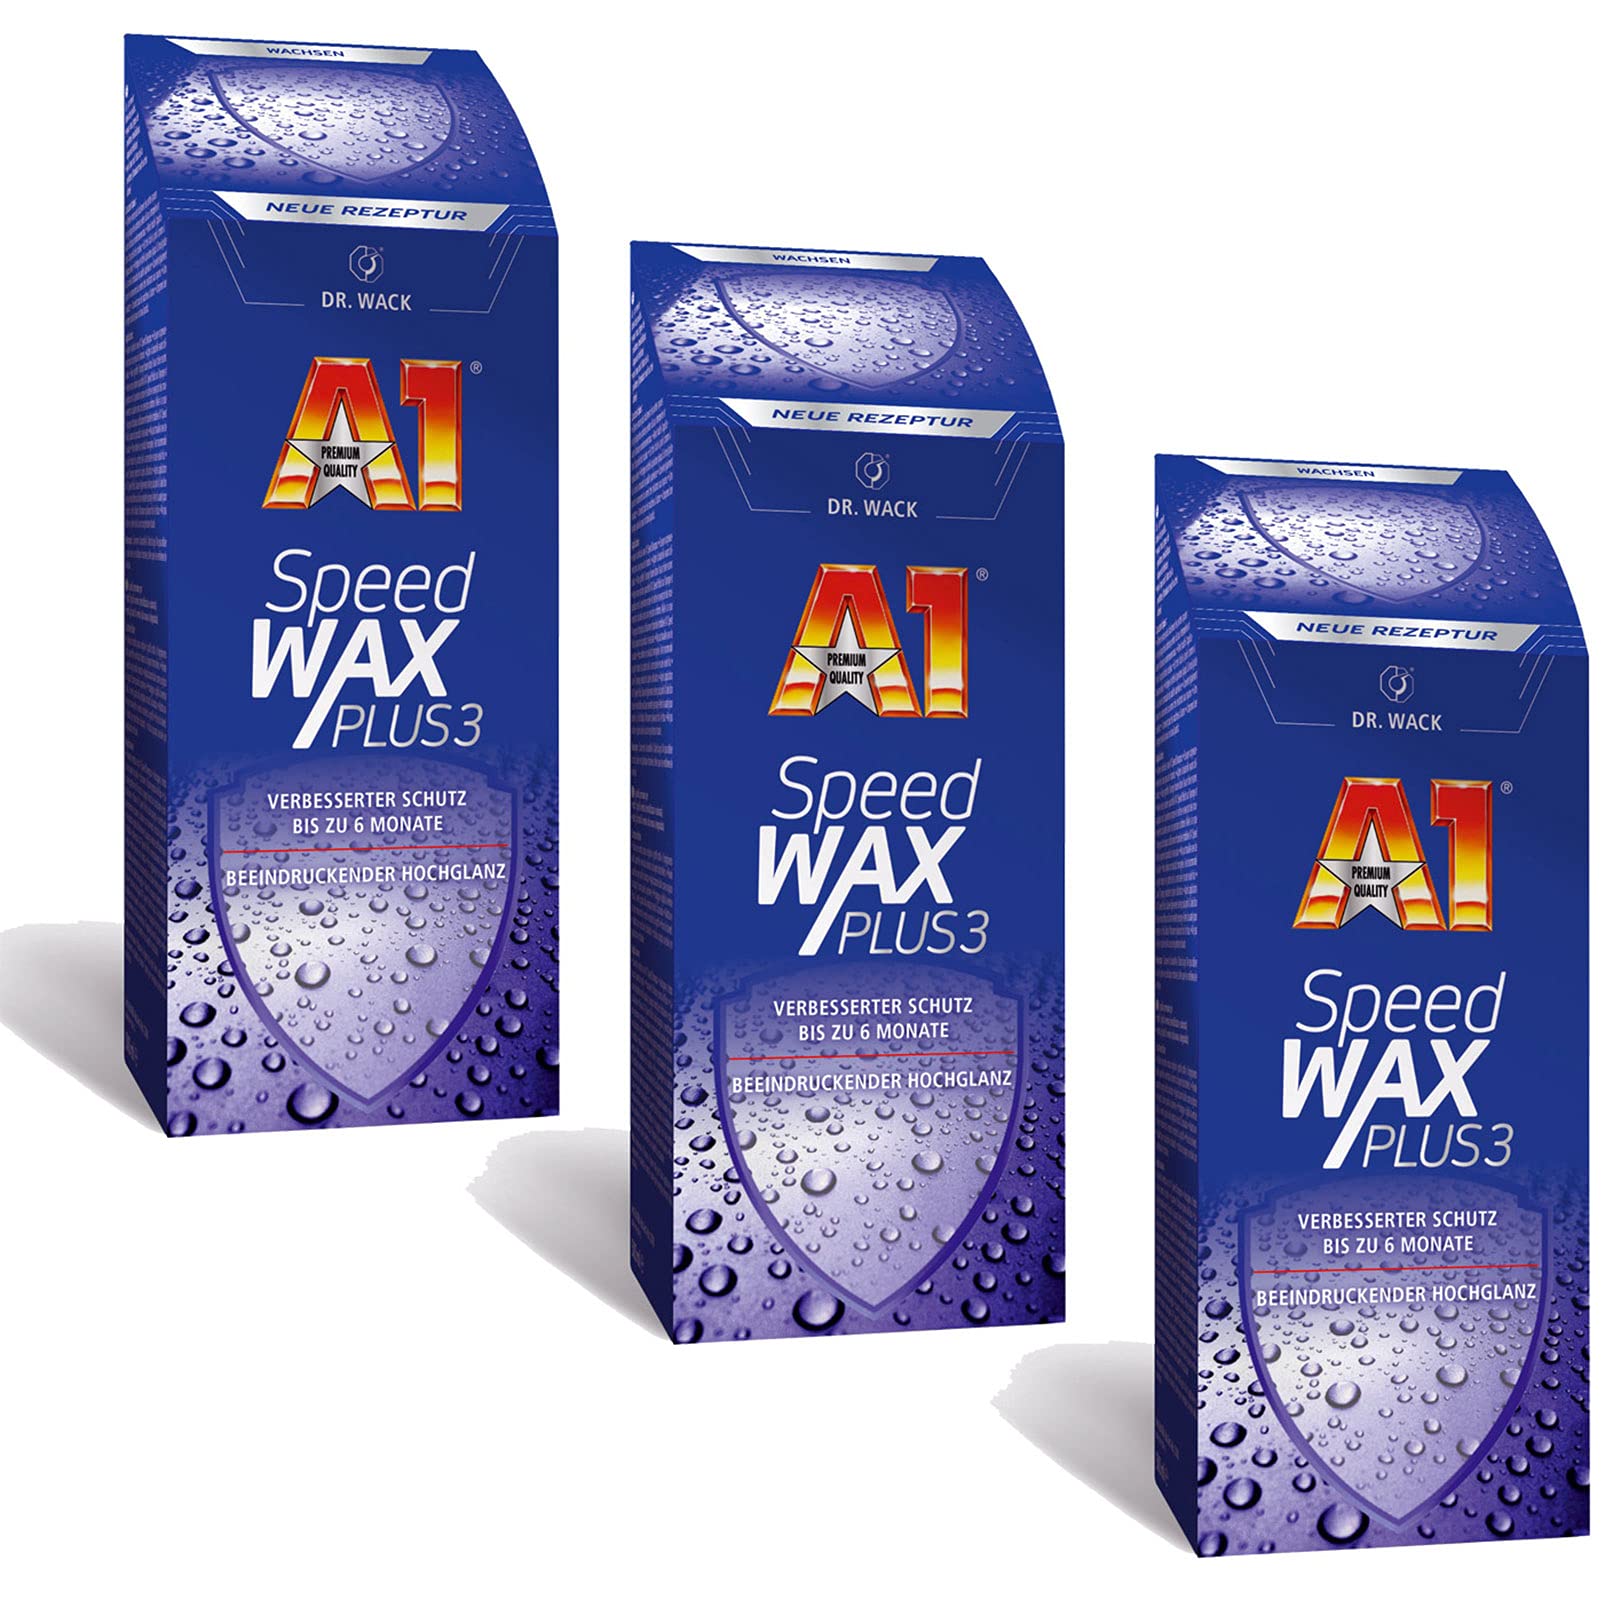 ILODA 3X 250ml Dr. Wack A1 Speed Wax Plus 3, Auto-Hartwachs, Auto-Wachs, Lackschutz, Lackversiegelung, Carnauba-Wachs mit extrem langanhaltenden Wasser-Abperl-Effekt für alle Lacke